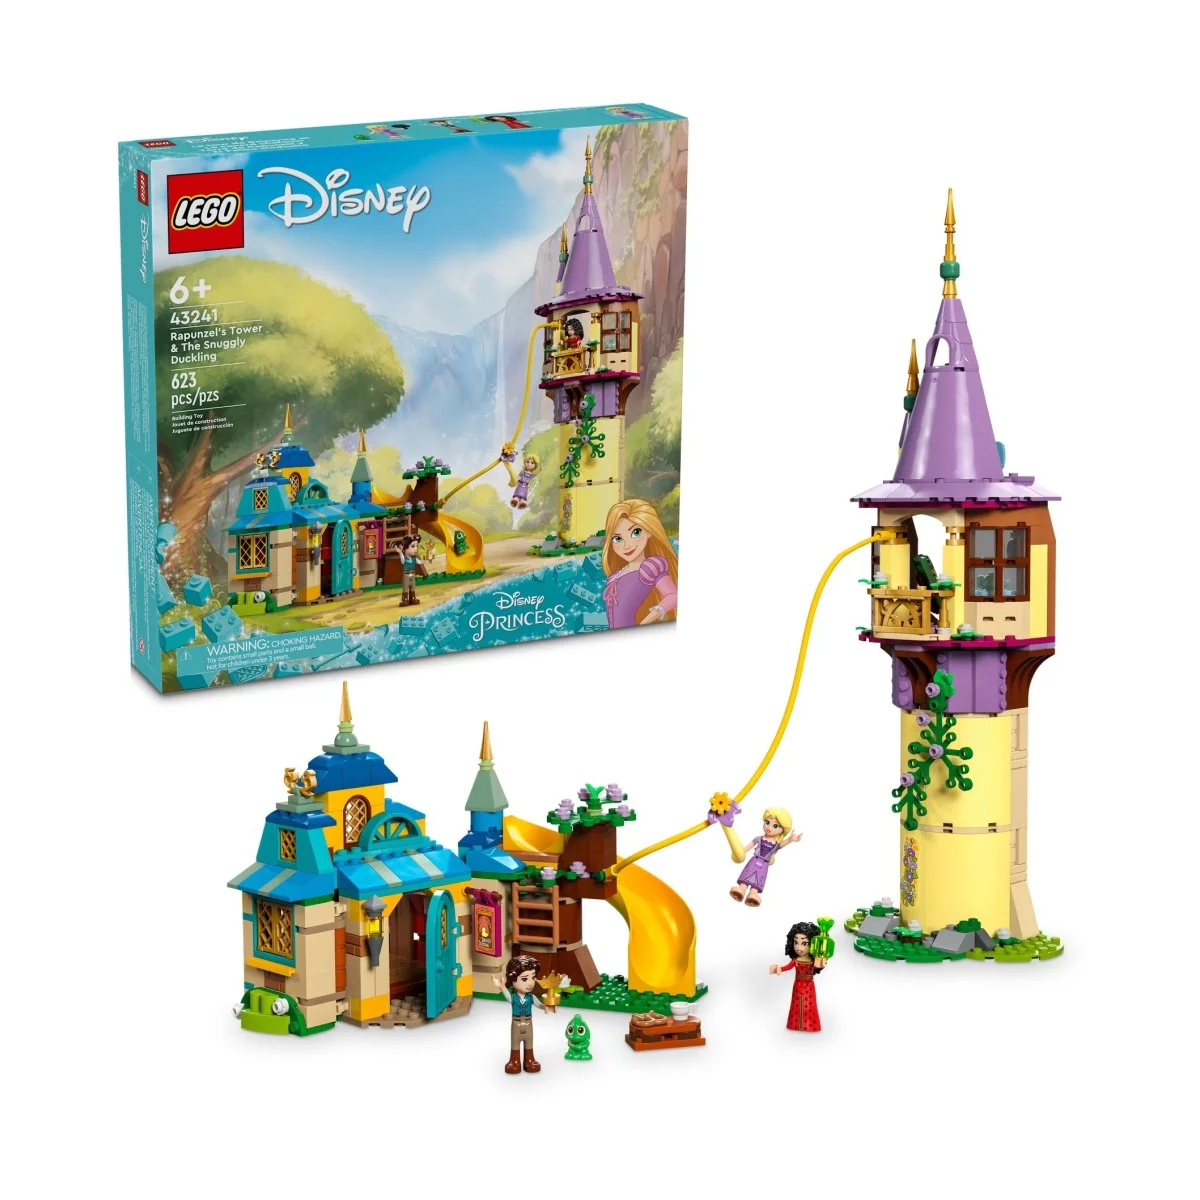 Конструктор Lego Disney Rapunzel's Tower & The Snuggly Duckling 43241, 623 детали